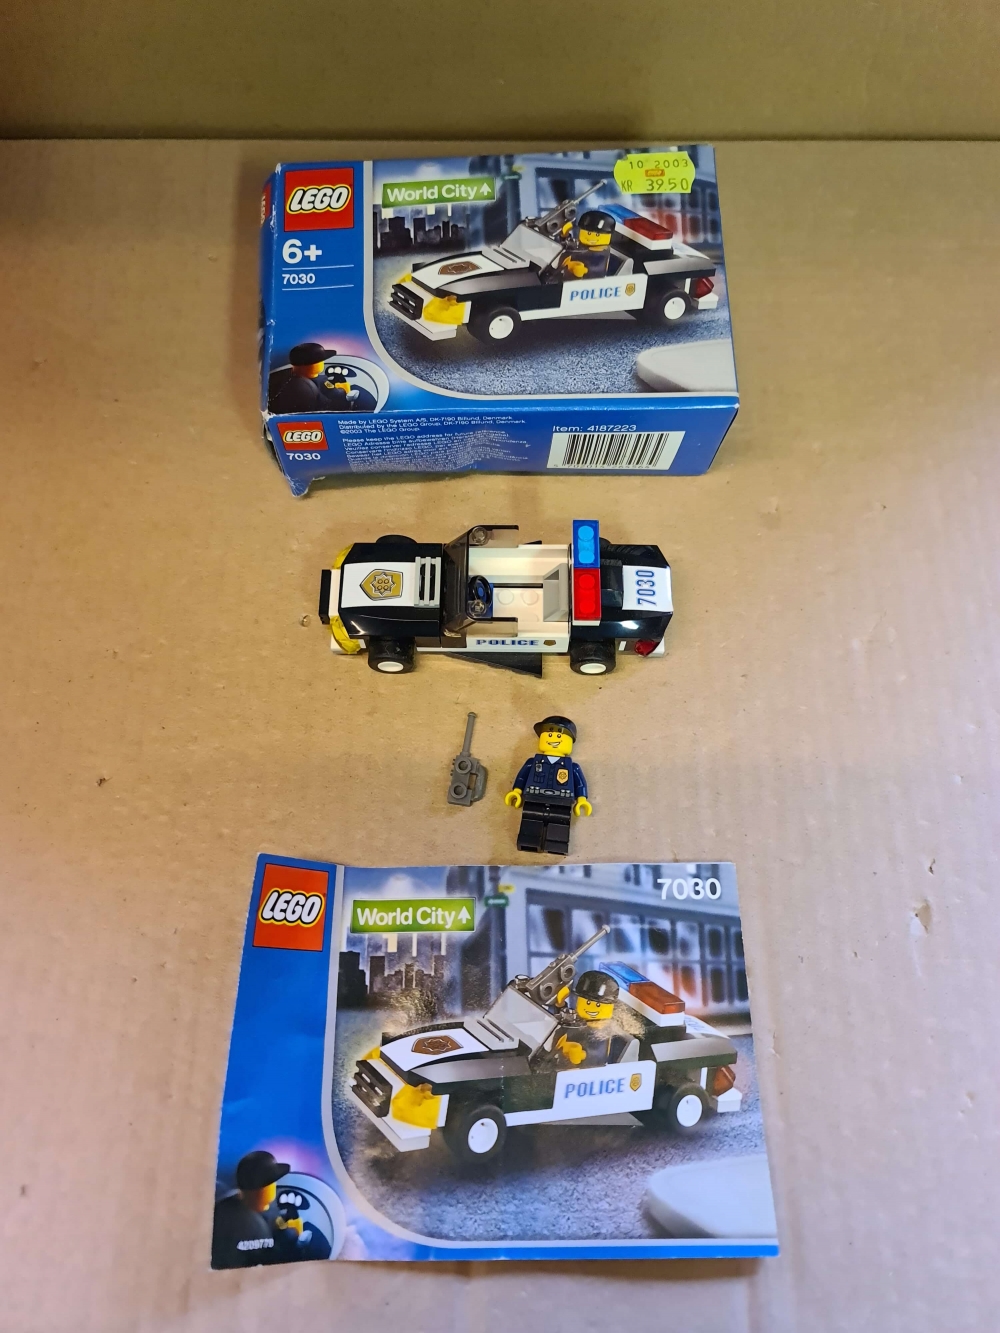 Sett 7030 fra Lego Town : World City serien.
Meget pent. Som nytt.
Komplett med manual og eske.